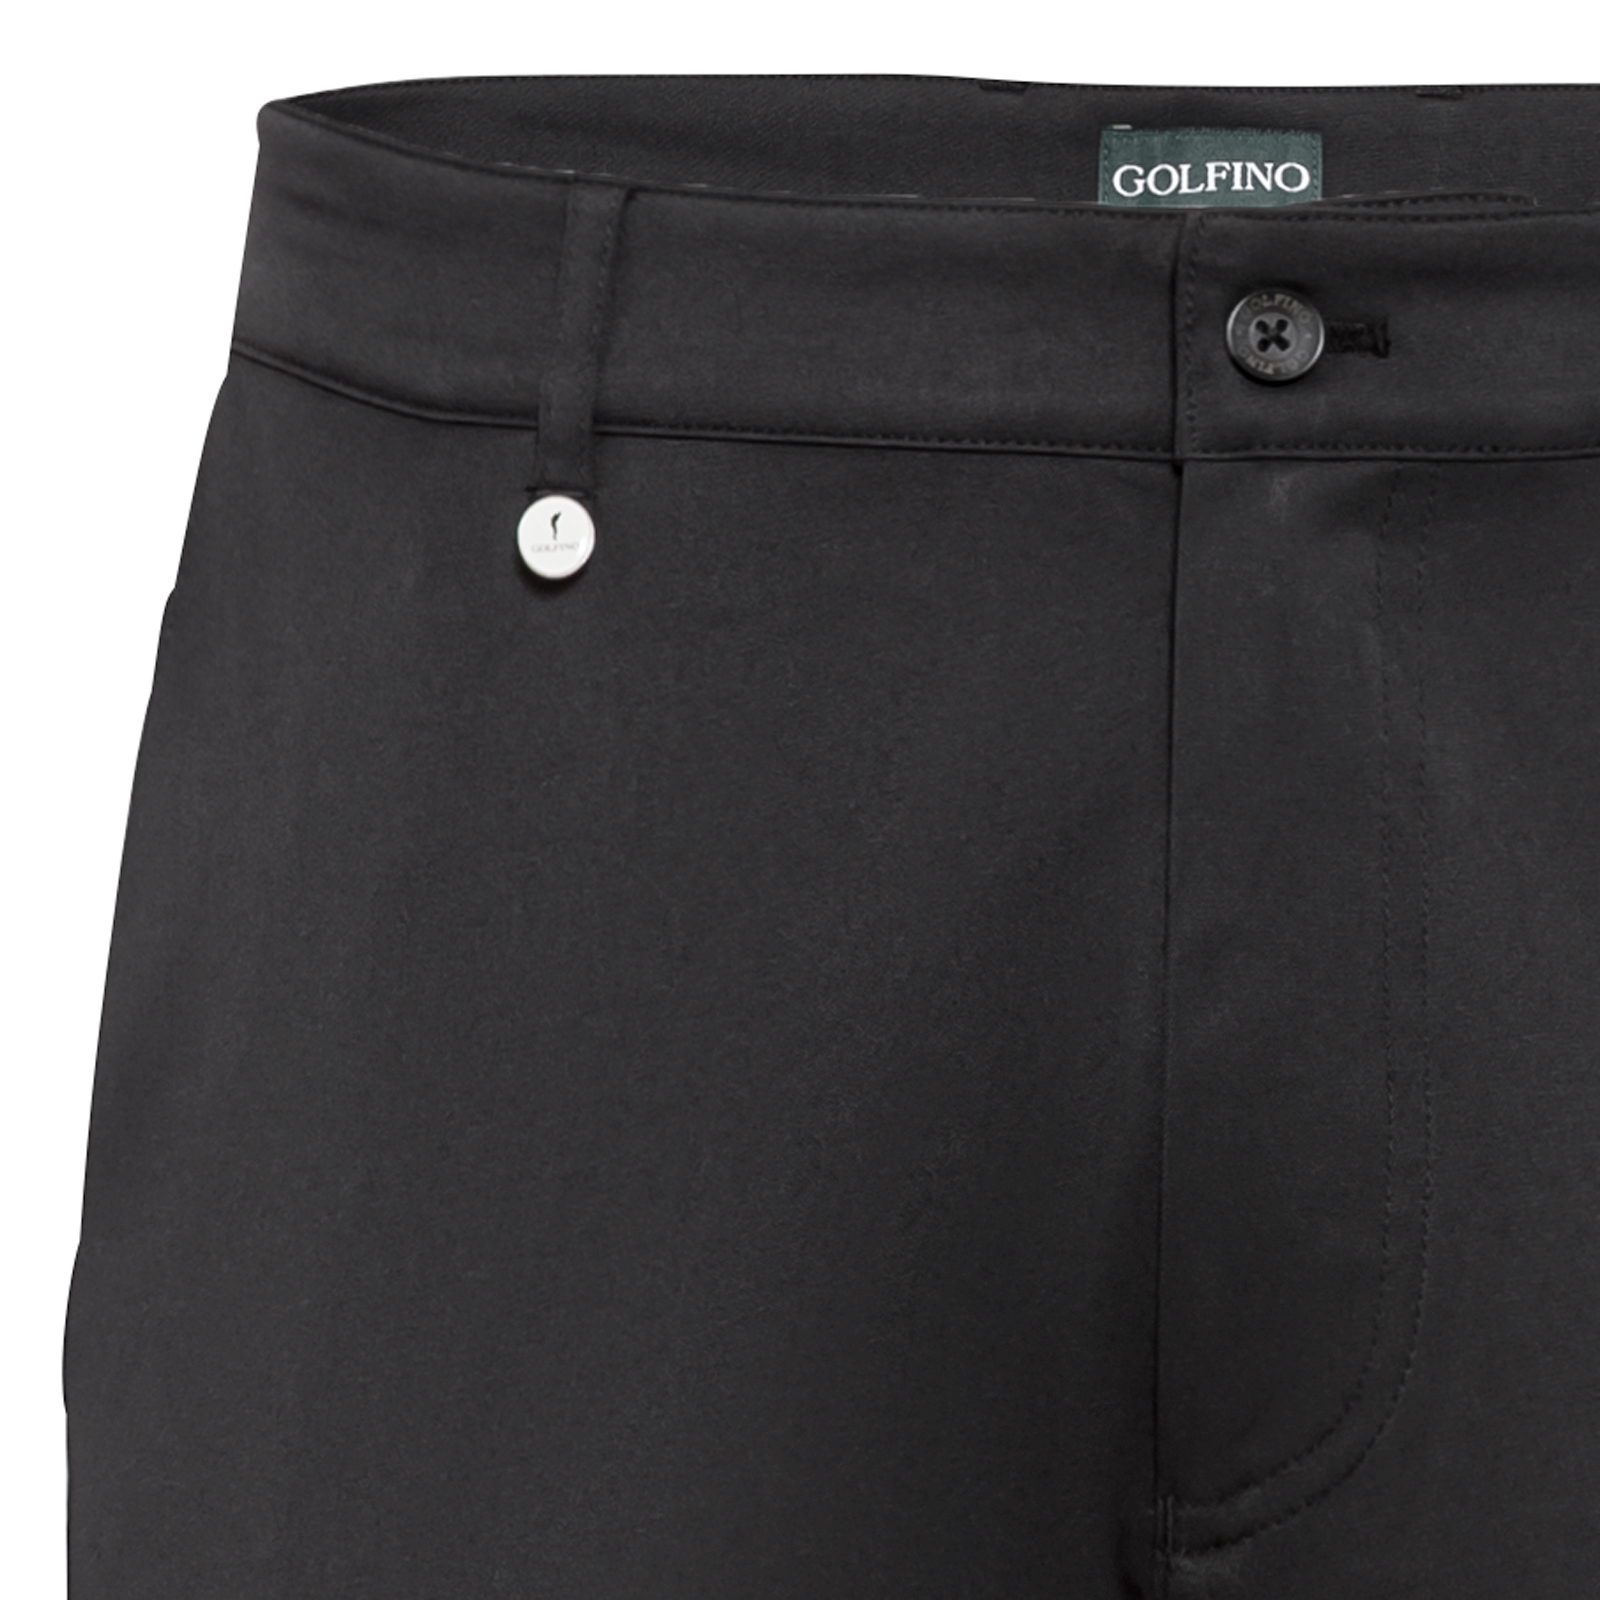 Pantalon de golf Slim Fit avec fonction Quick Dry pour hommes